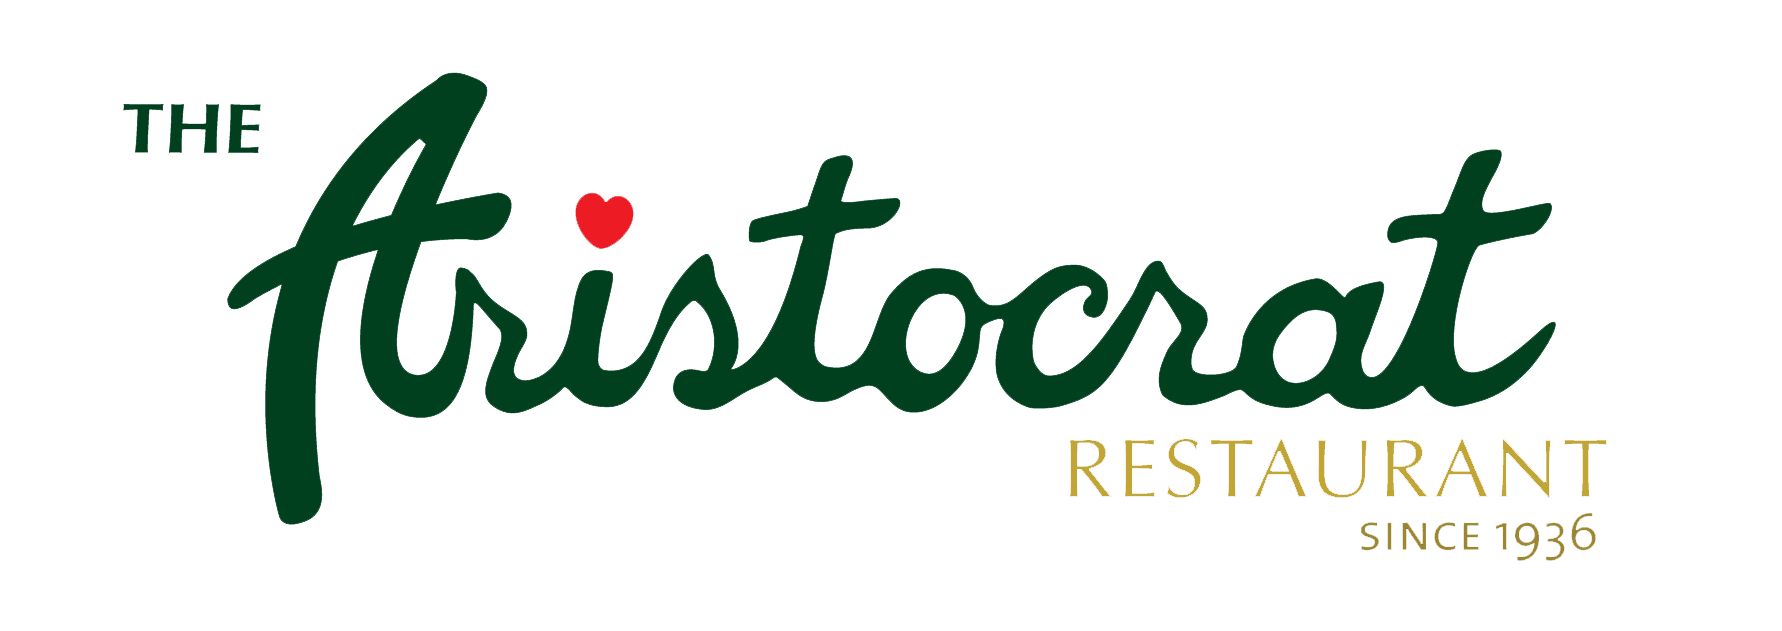 Aristocrat Logo - The Aristocrat Restaurant: Home of the Best Chicken BBQ | Philippine ...